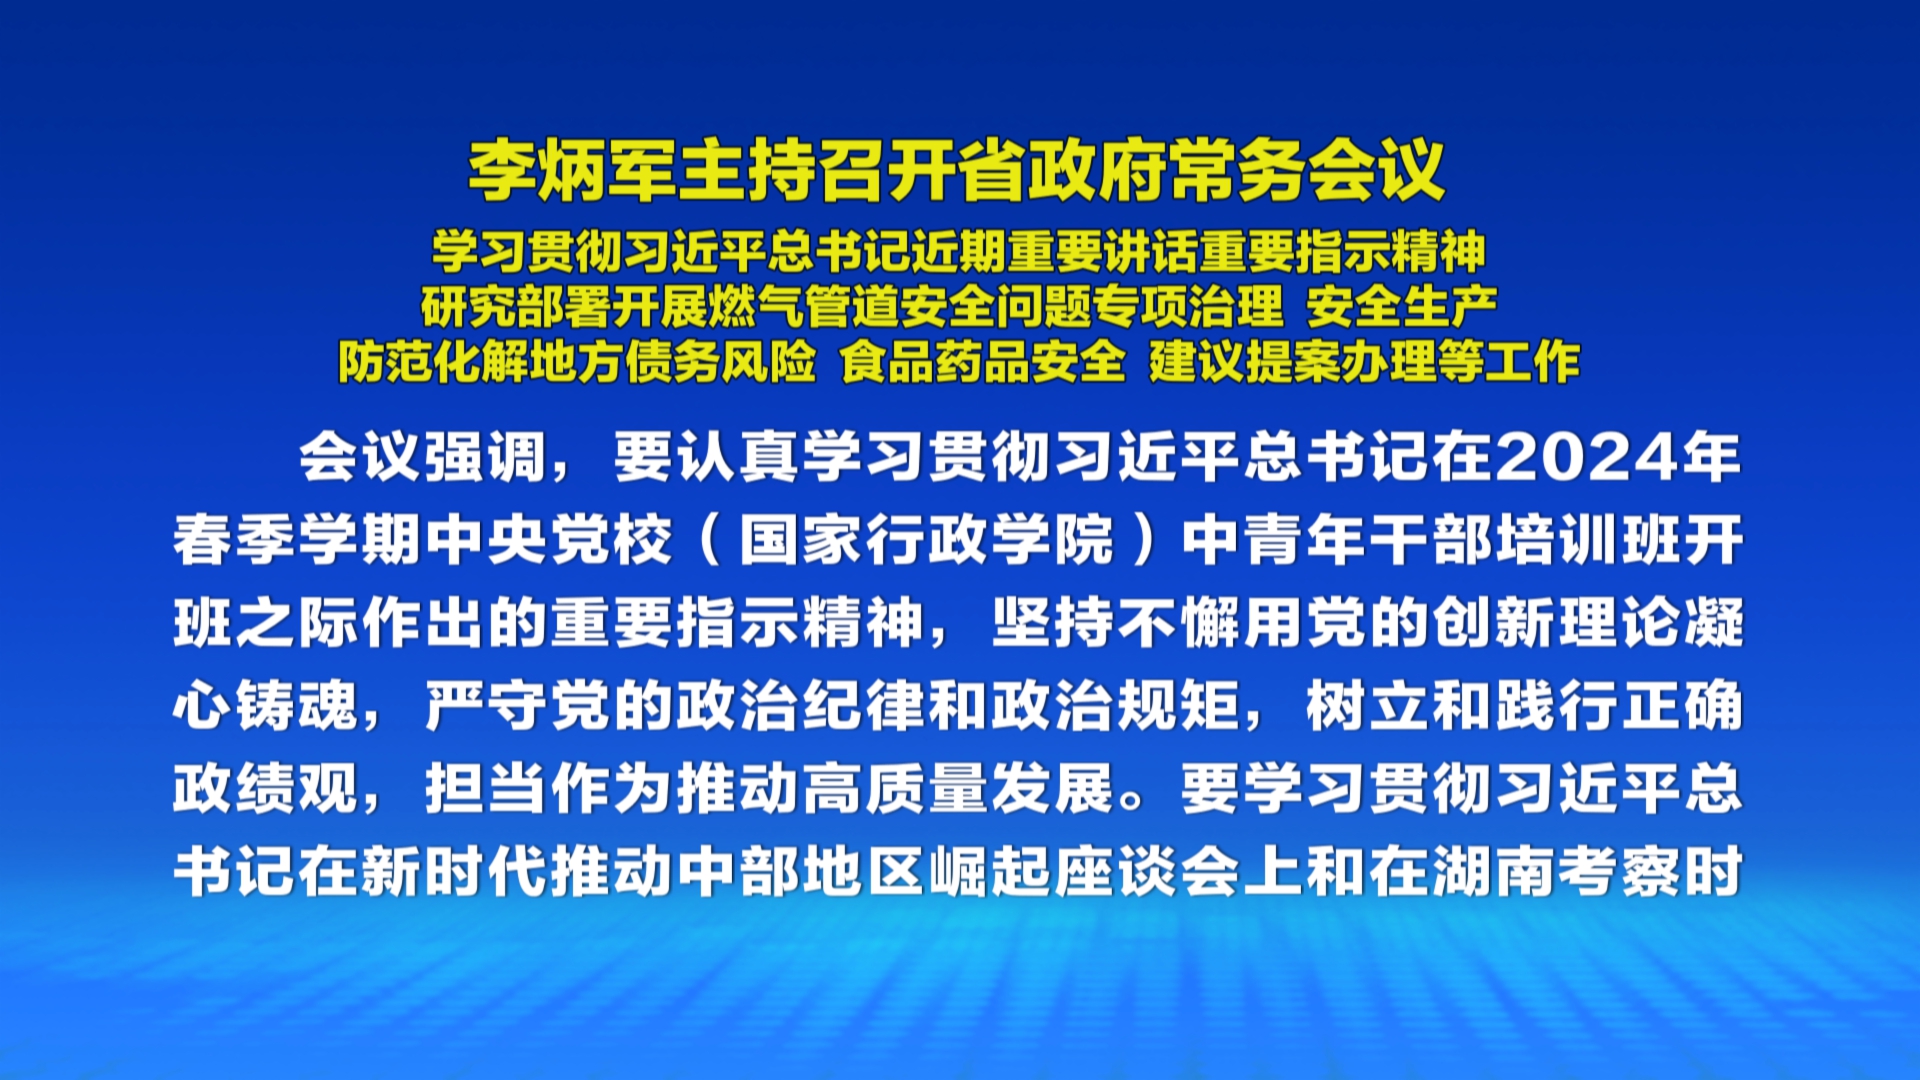 贵州新闻联播丨李炳军主持召开省政府常务会议